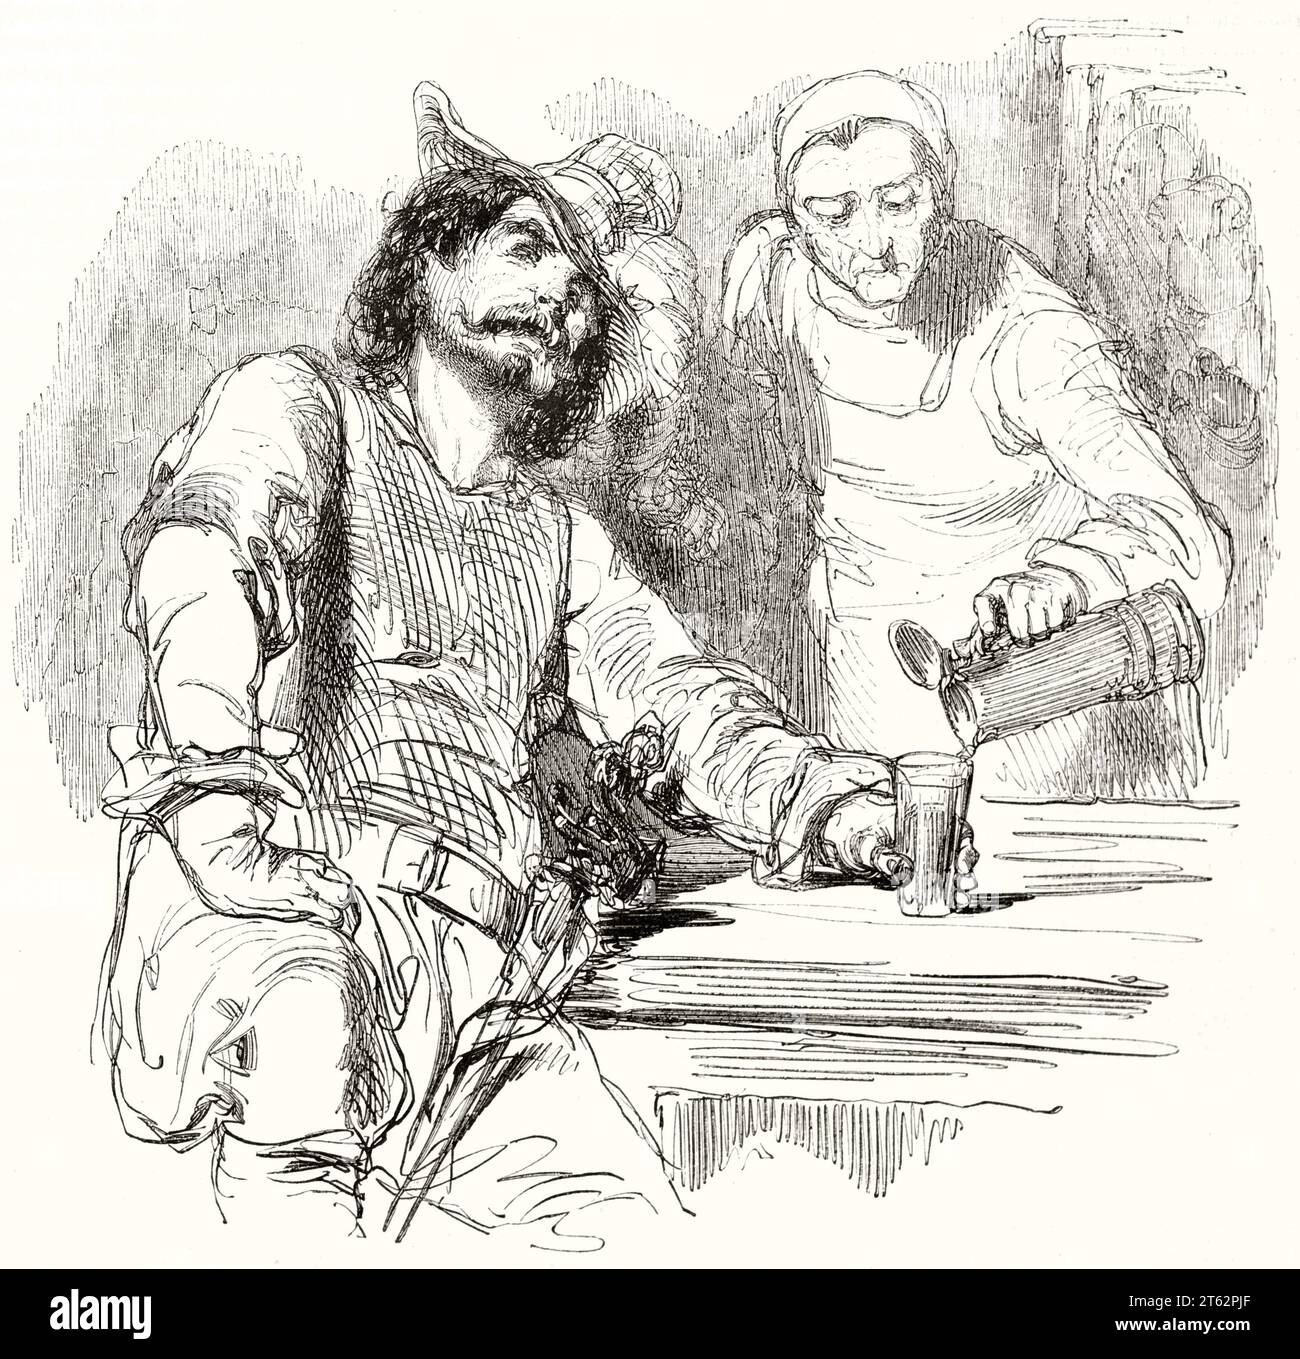 Vieille illustration représentant l'homme dans une taverne. Par Gavarni, publ. Sur magasin pittoresque, Paris, 1849 Banque D'Images